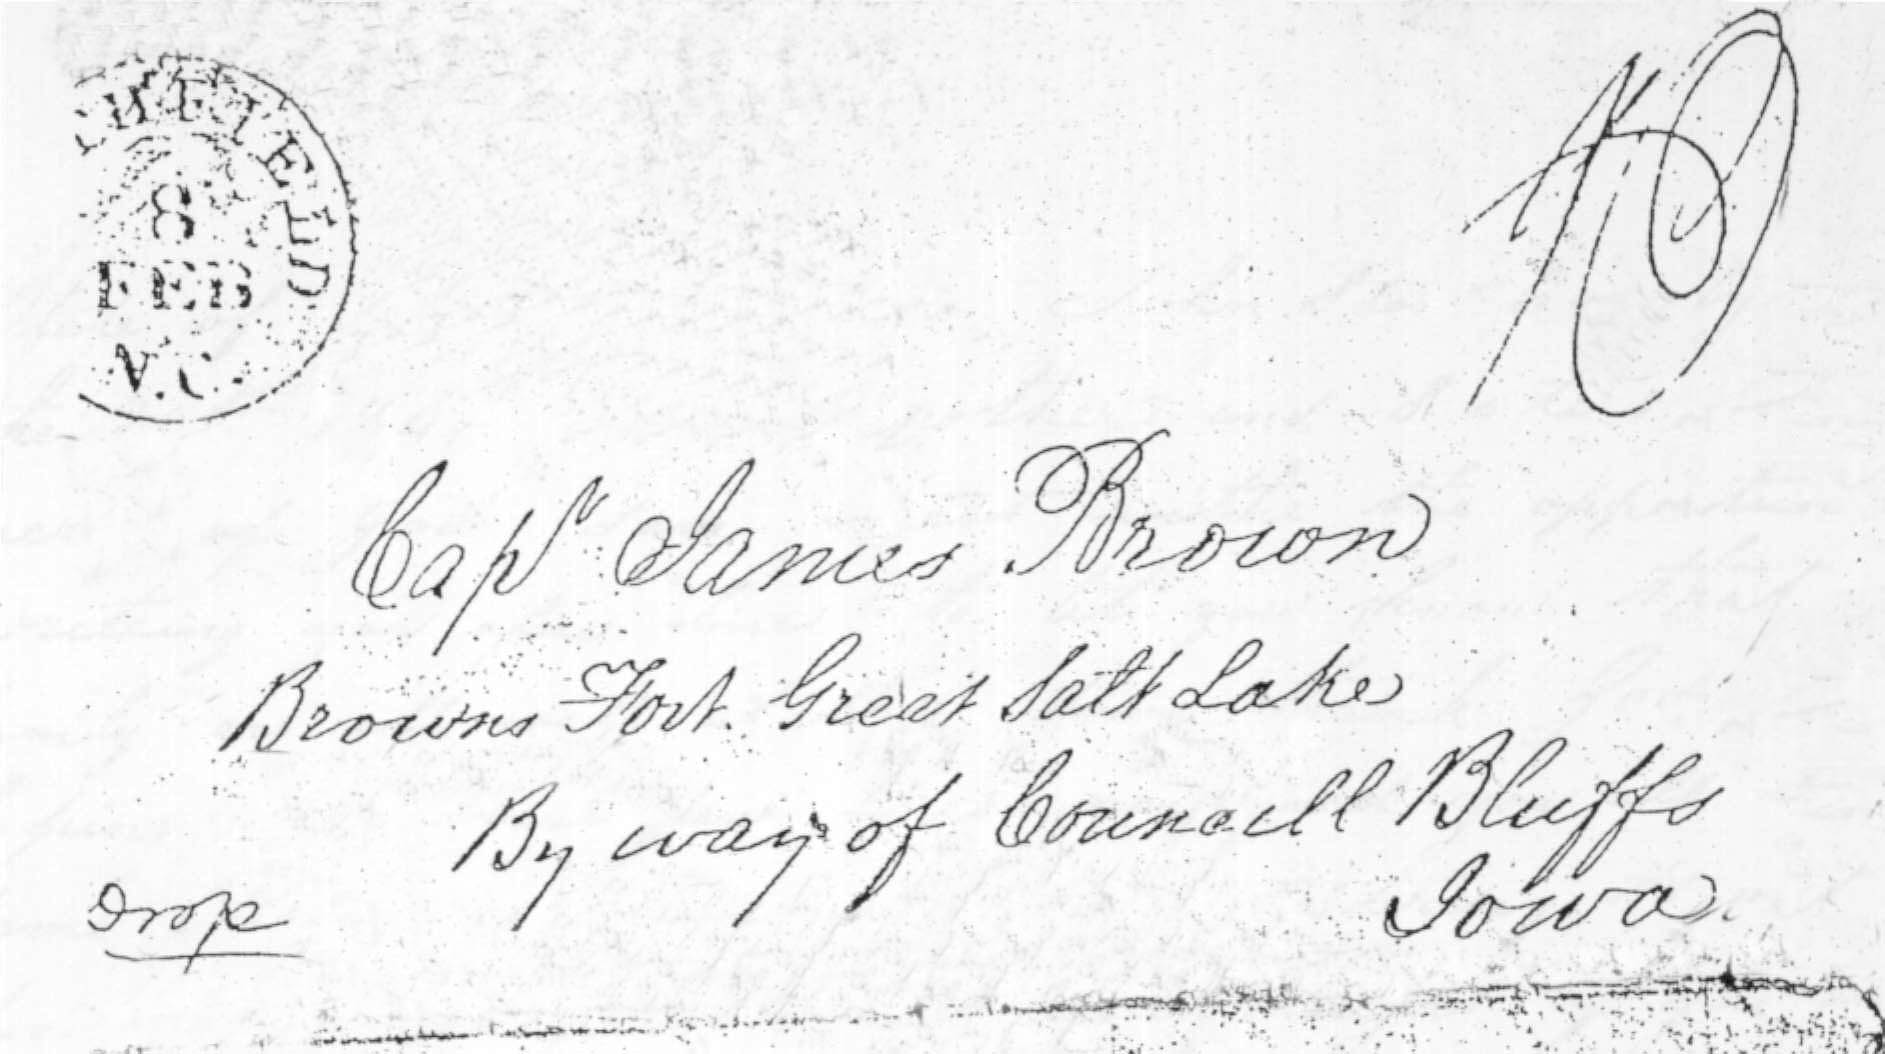 Williams Brown envelope postmarked from Enfield N.C. on 8 Feb 1849